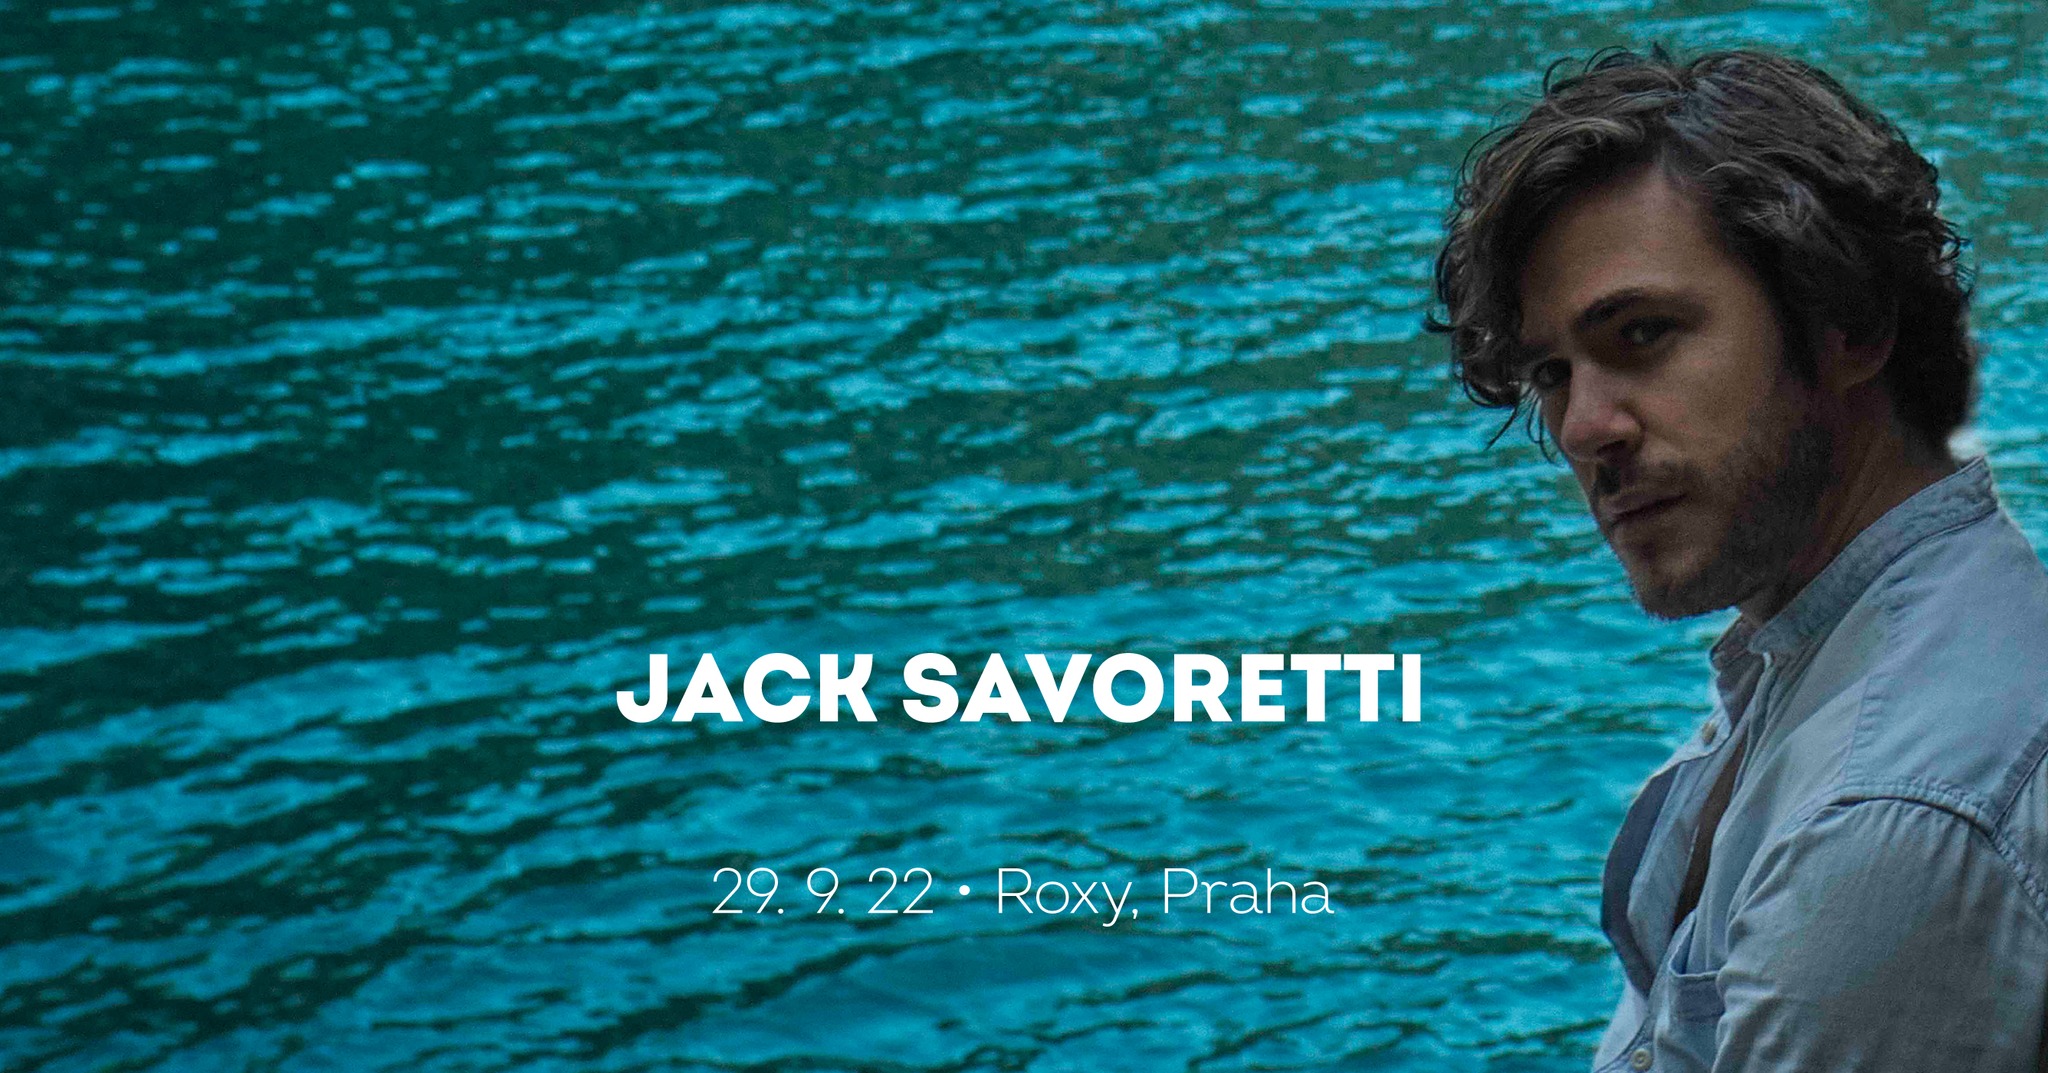 Britský zpěvák Jack Savoretti míří do Prahy